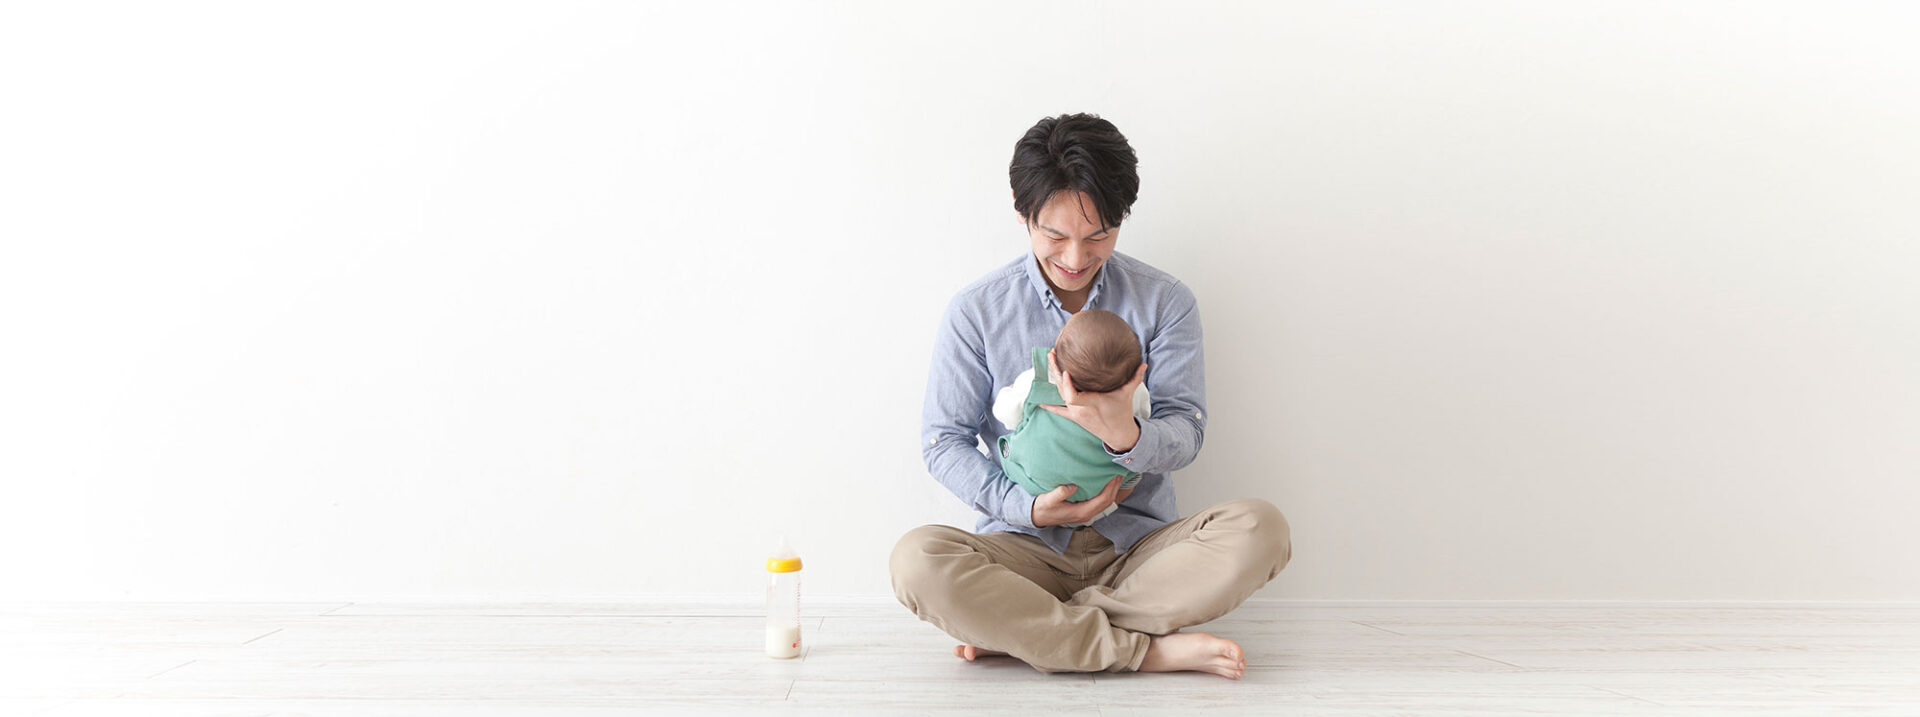 Japanese man cradling a baby